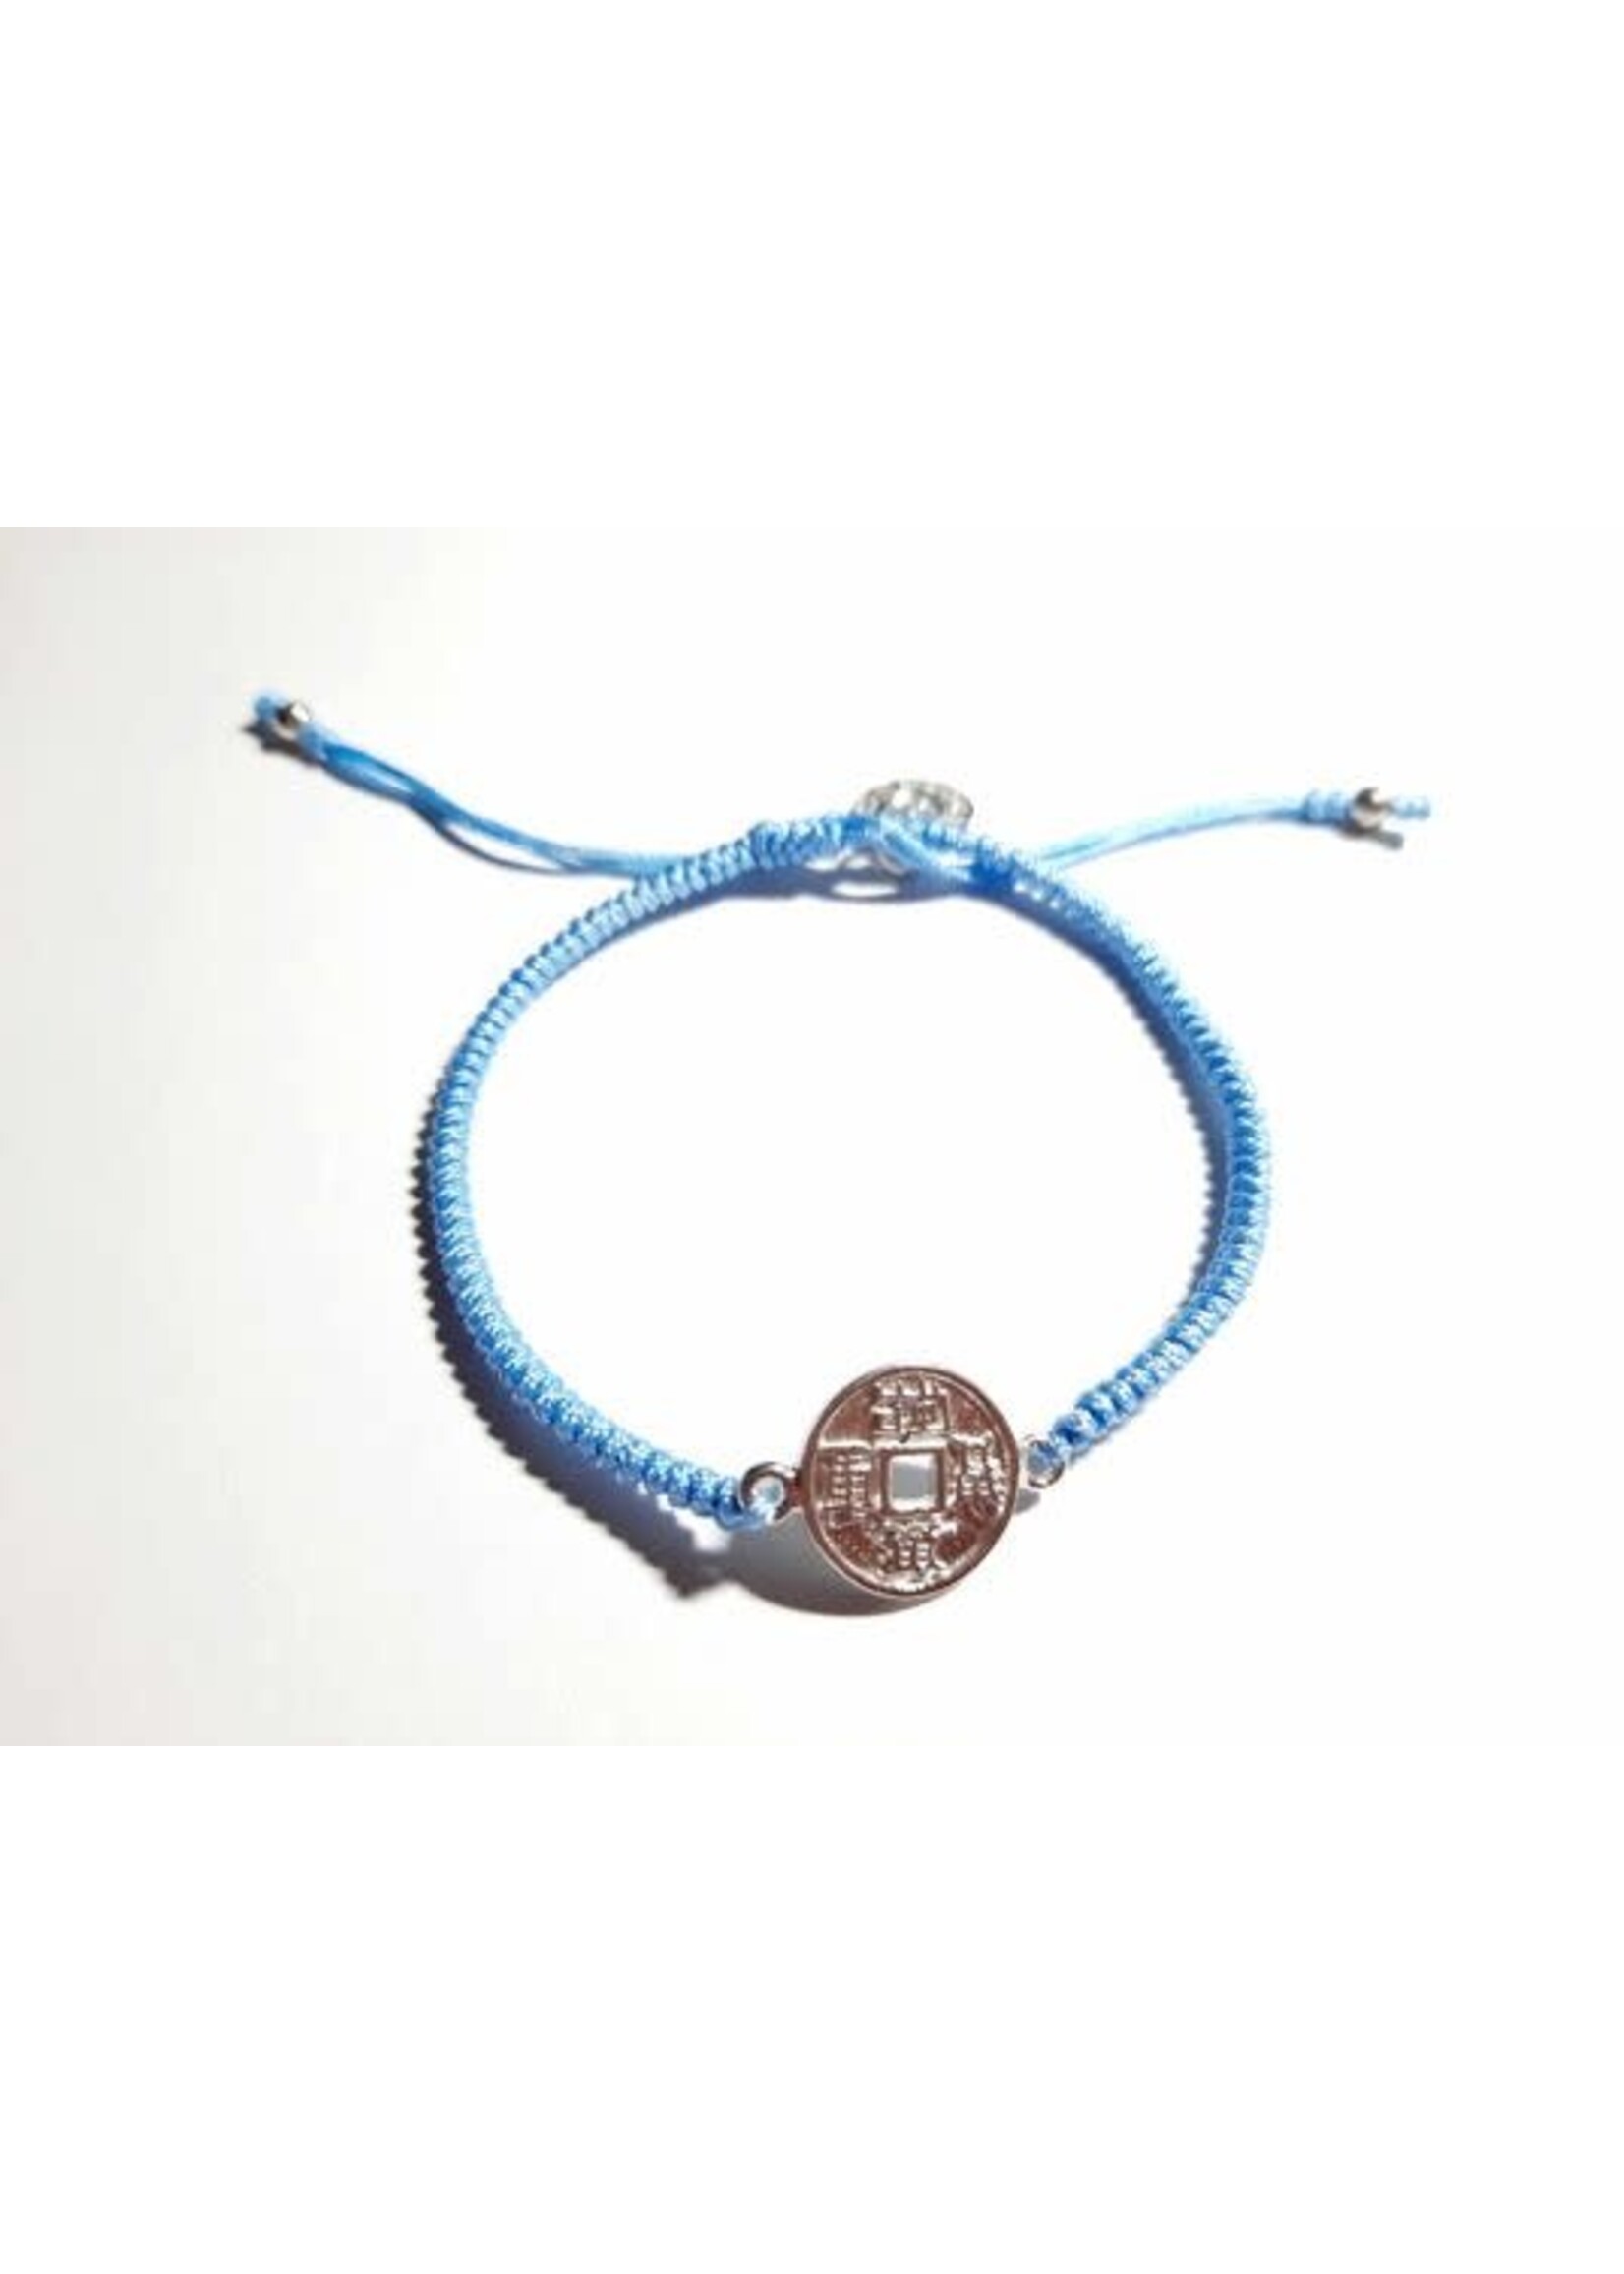 Barong Barong Barong Barong armband met schuifknoop, lucky coin en koord blauw